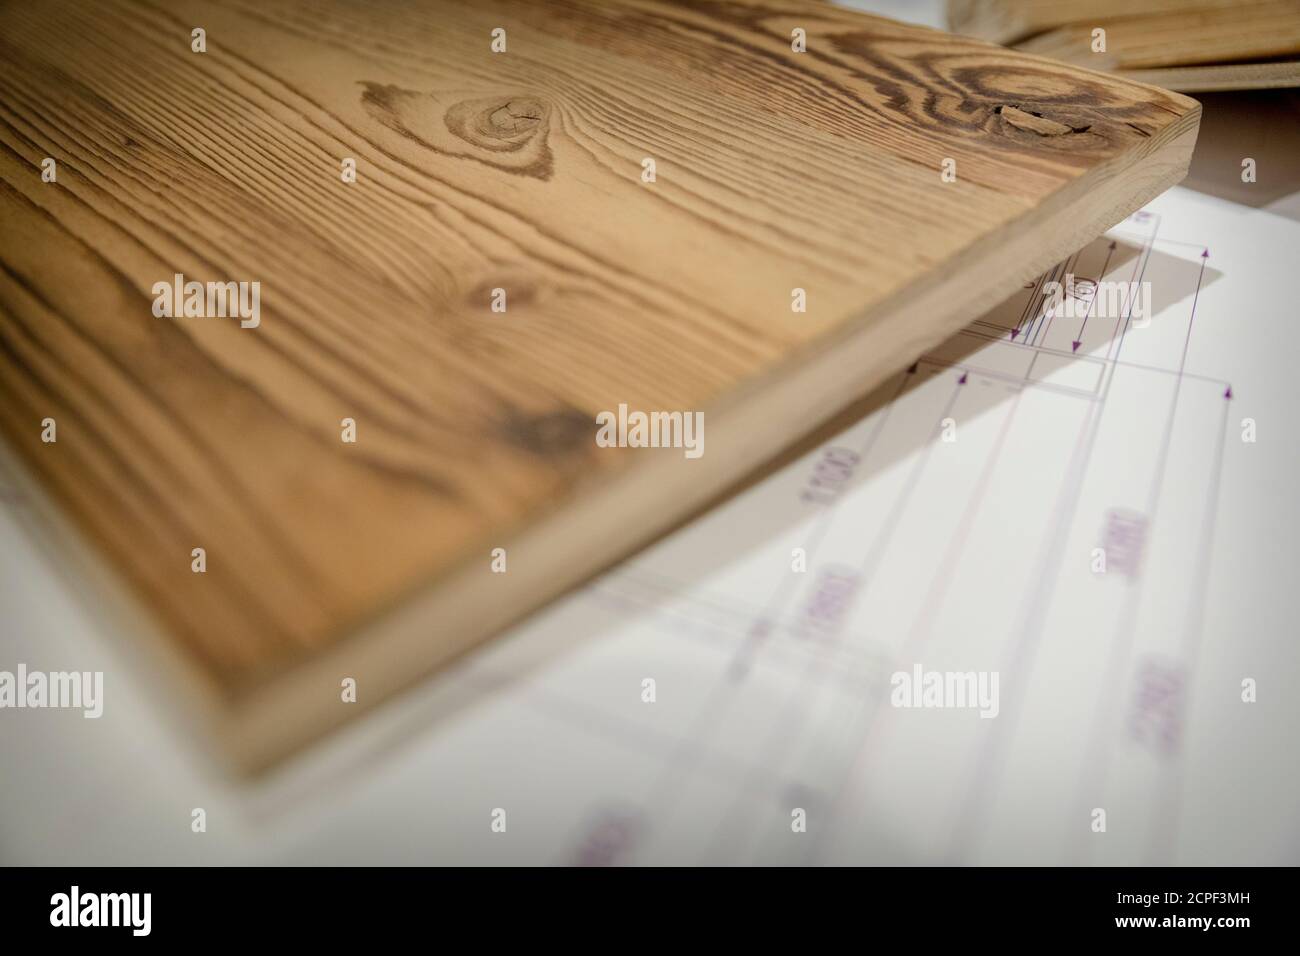 carpenteria, mobili in legno, disegni tecnici e campioni di diversi tipi di legno sotto una scrivania Foto Stock